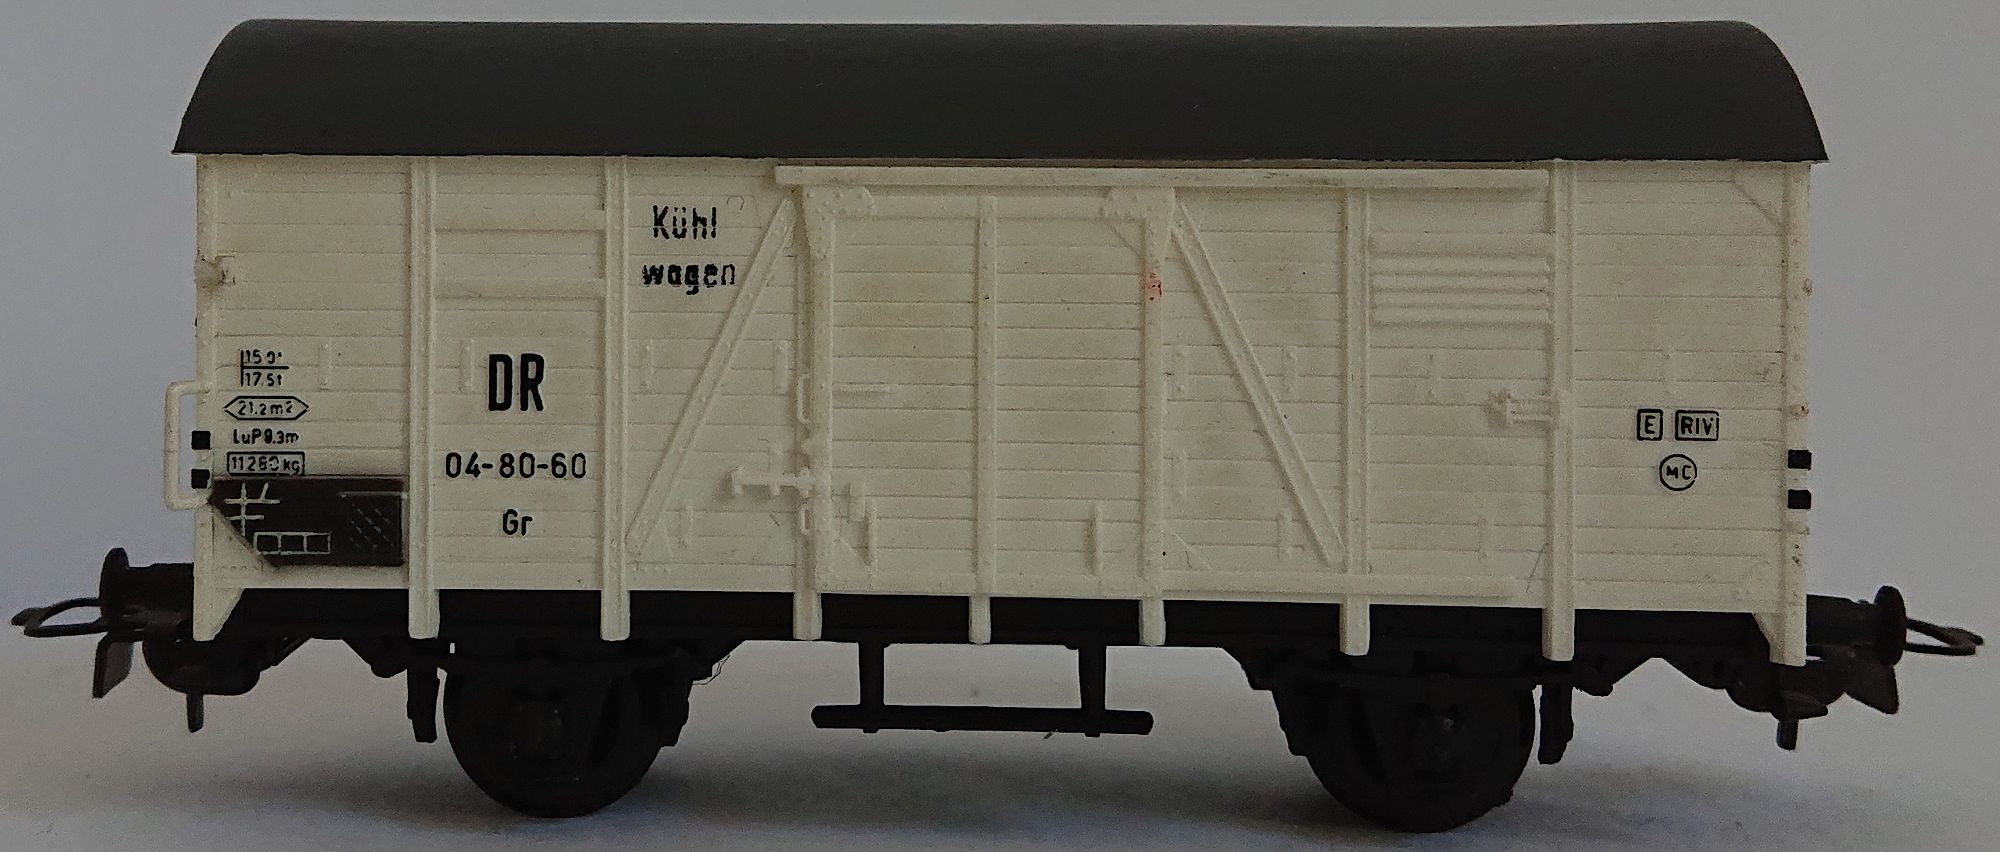 PIKO Kühlwagen 2 achsig 04-80-60 Deutsche Reichsbahn  